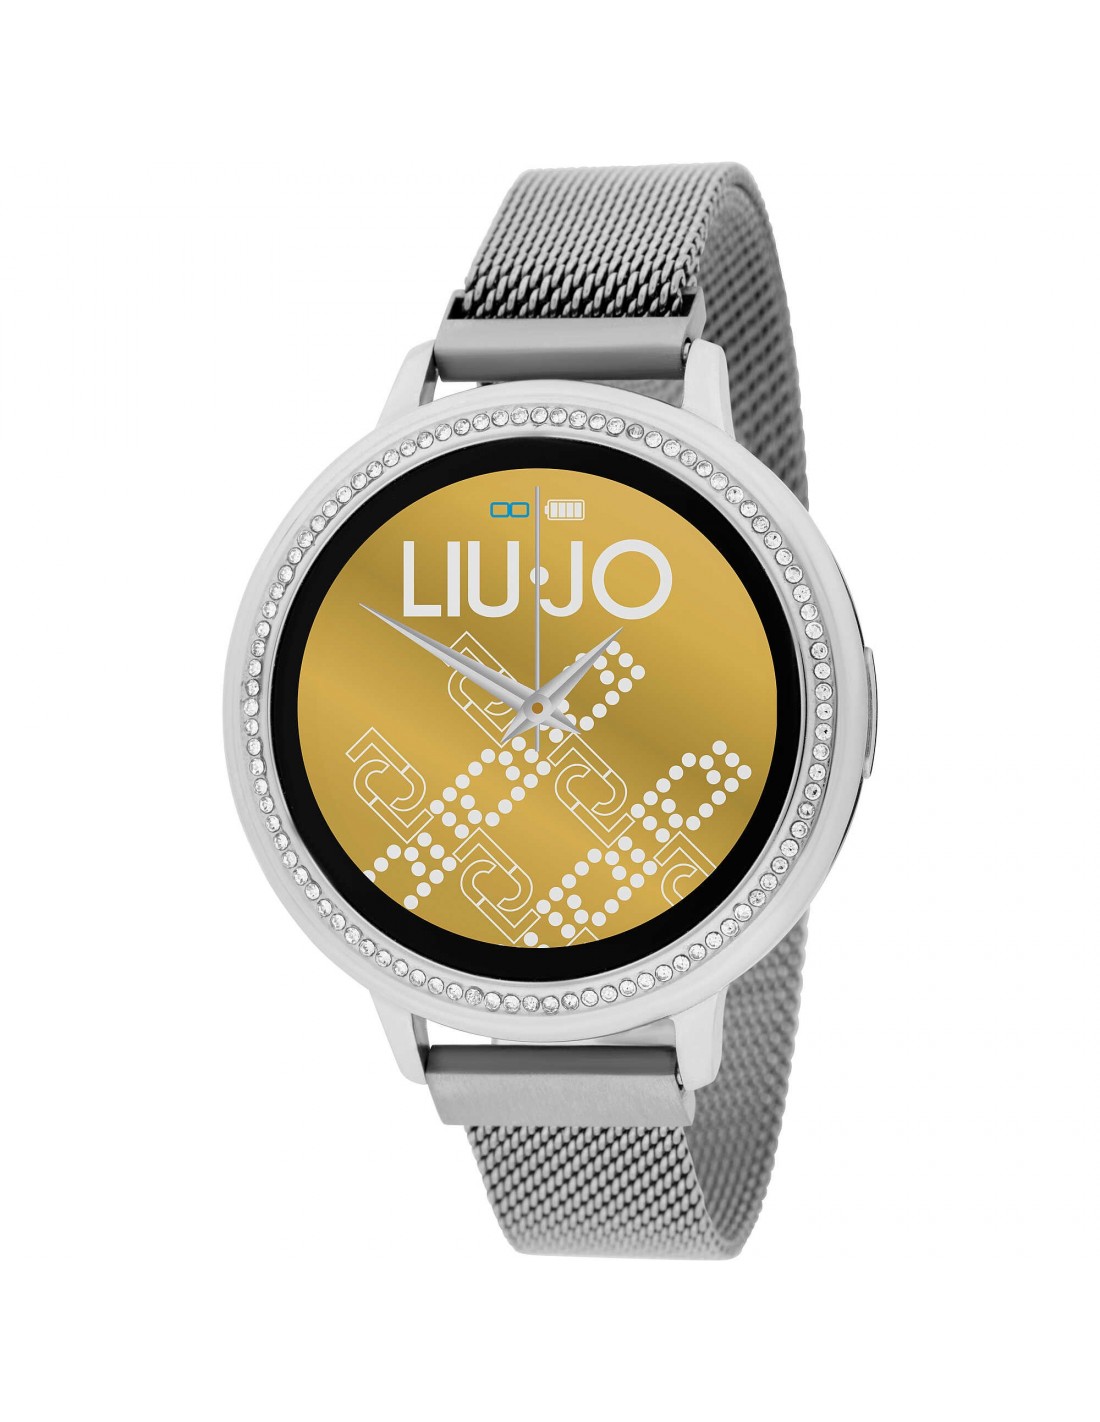 Orologio smartwatch LIU-JO SWLJ069 only 127,20 € on